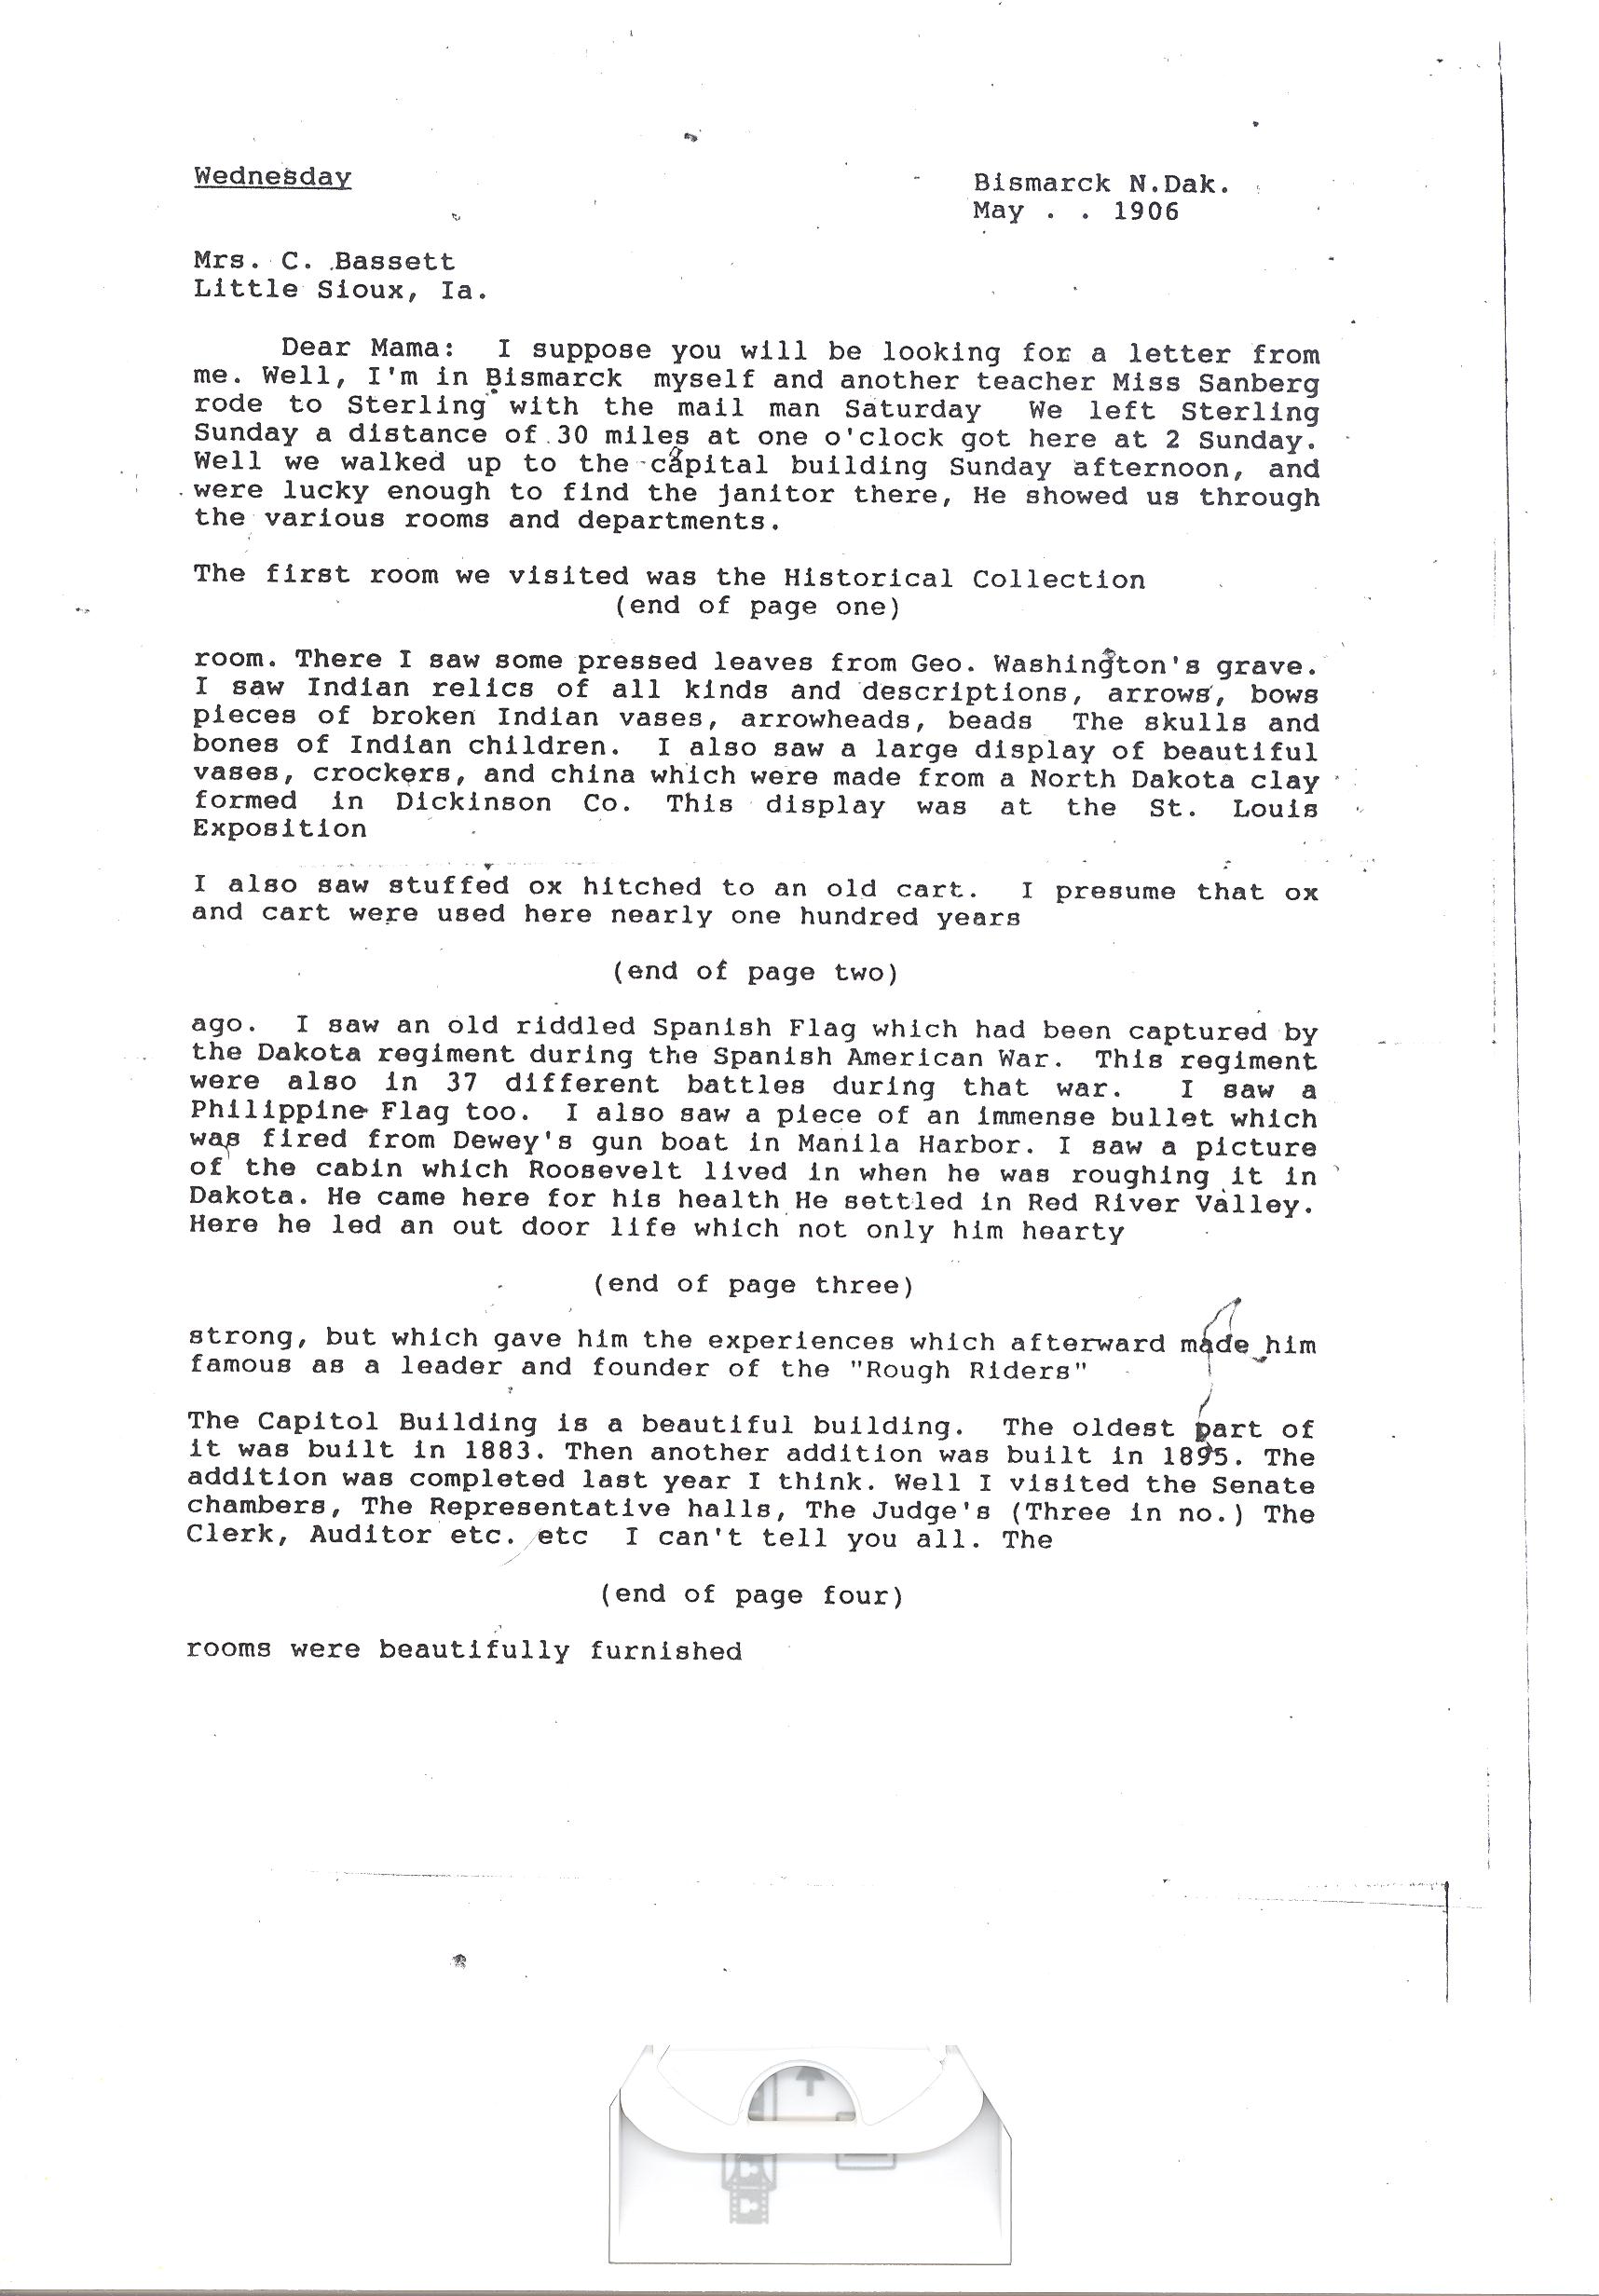 Effie Clinkenbeard Letter, original and transcript (Transcription Page 1)